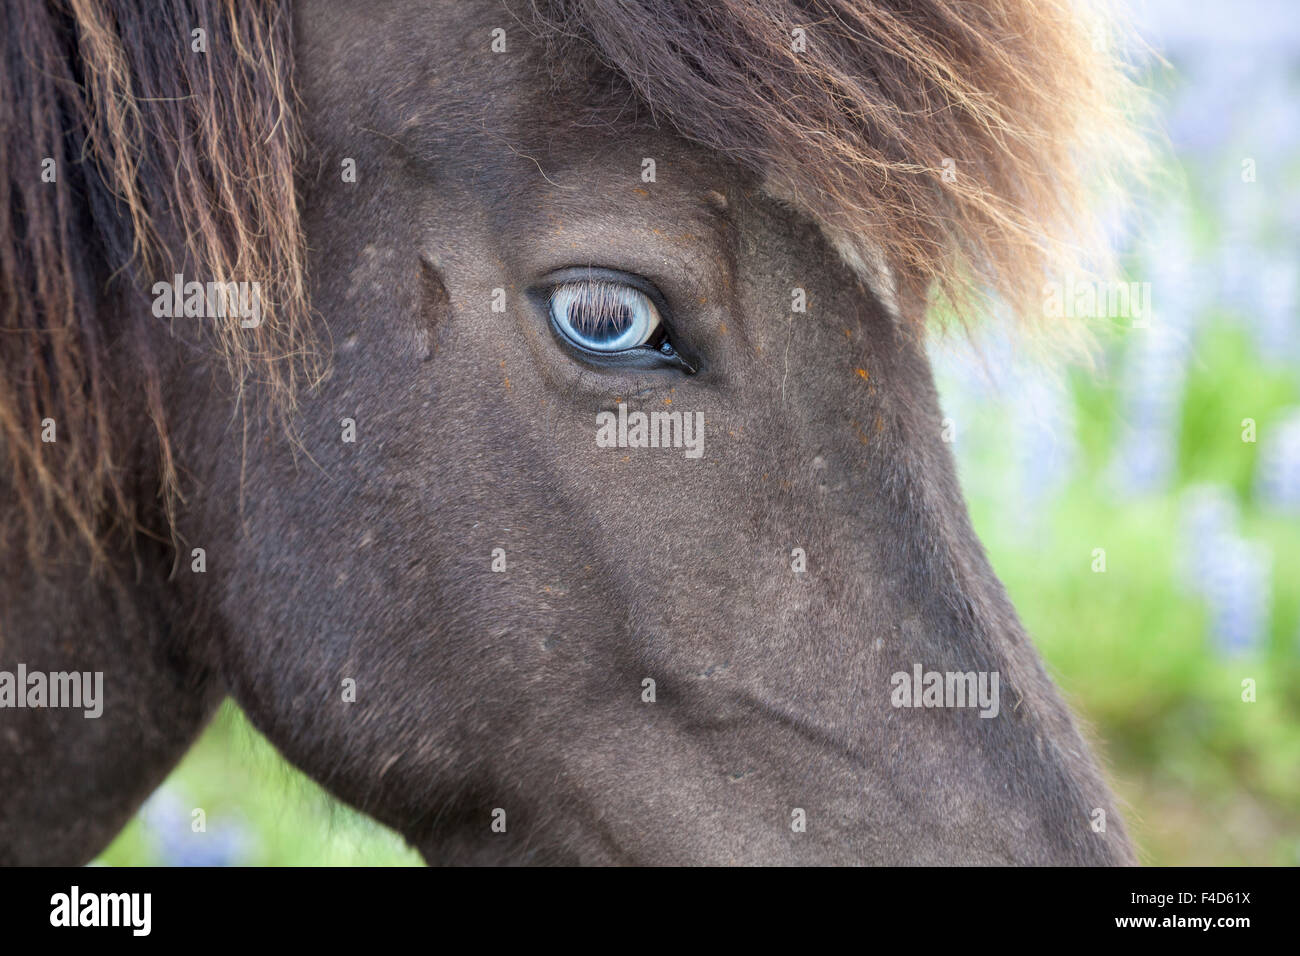 Dagli occhi blu cavallo islandese, Varmahlid, Skagafjordur, Nordhurland Vestra, Islanda. Foto Stock